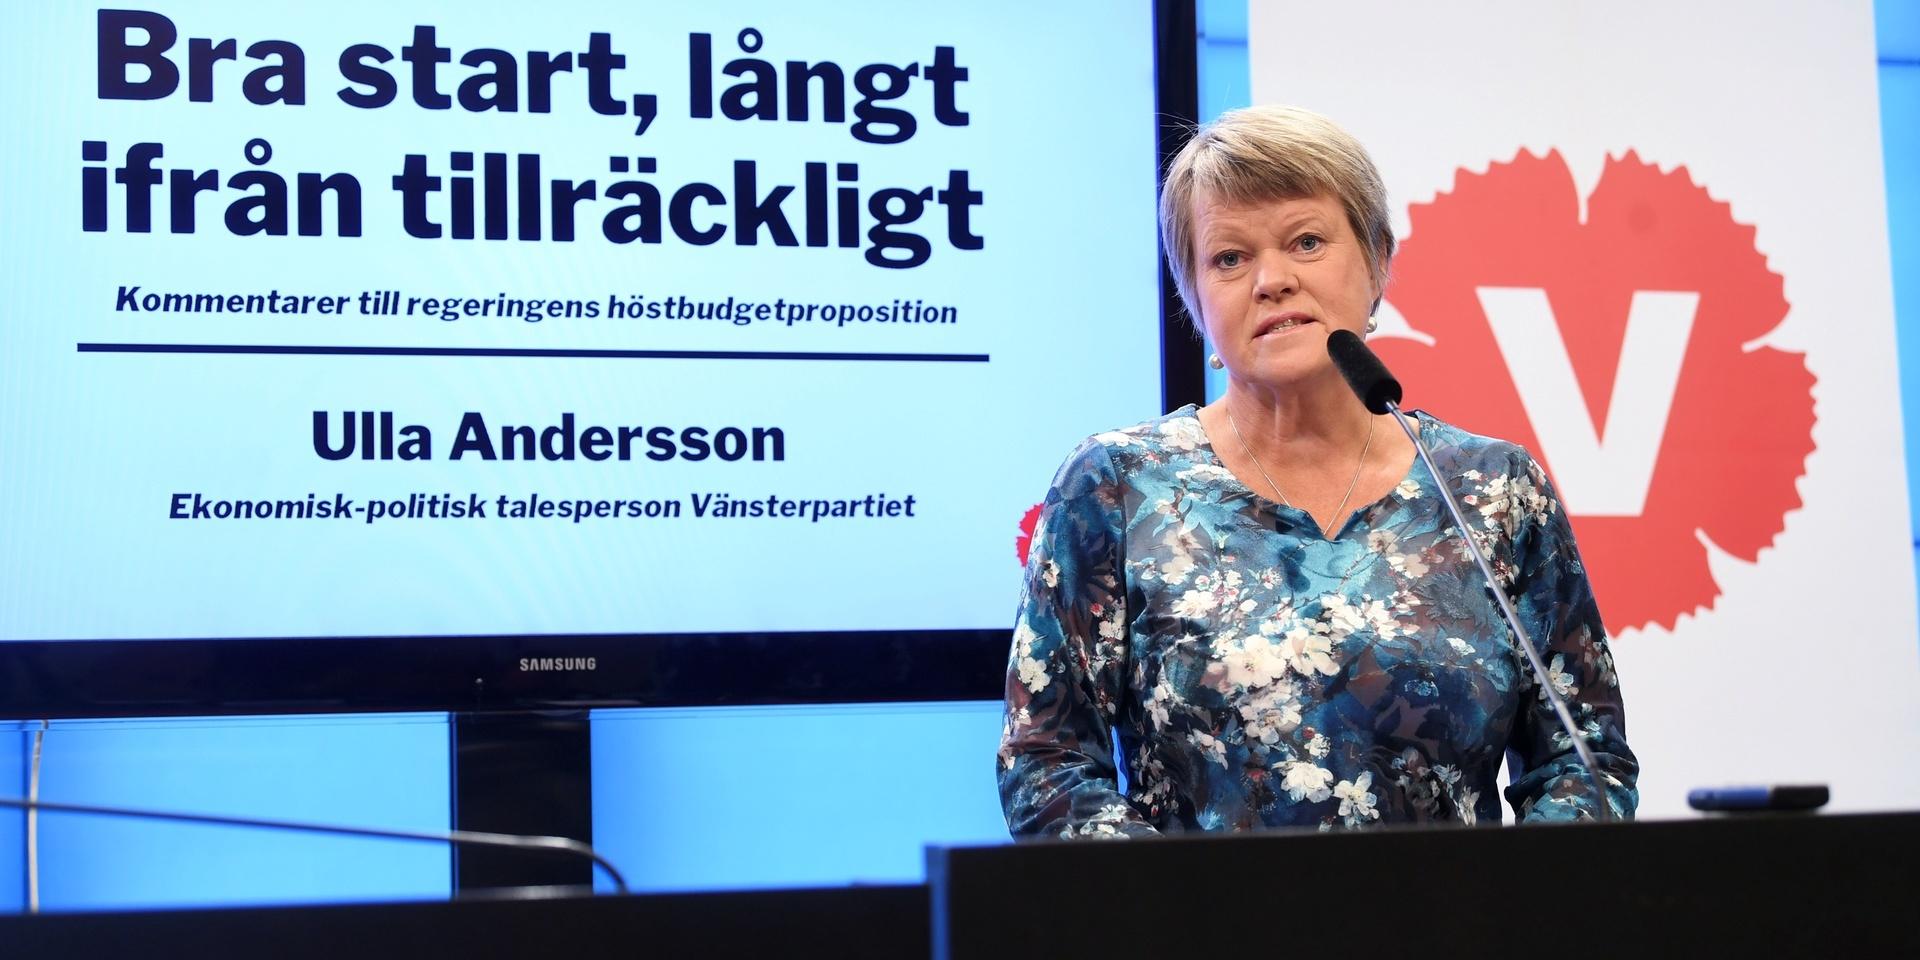 Ulla Andersson, Vänsterpartiets ekonomisk-politiske talesperson, kommenterar budgetpropositionen vid en pressträff i riksdagens presscenter.